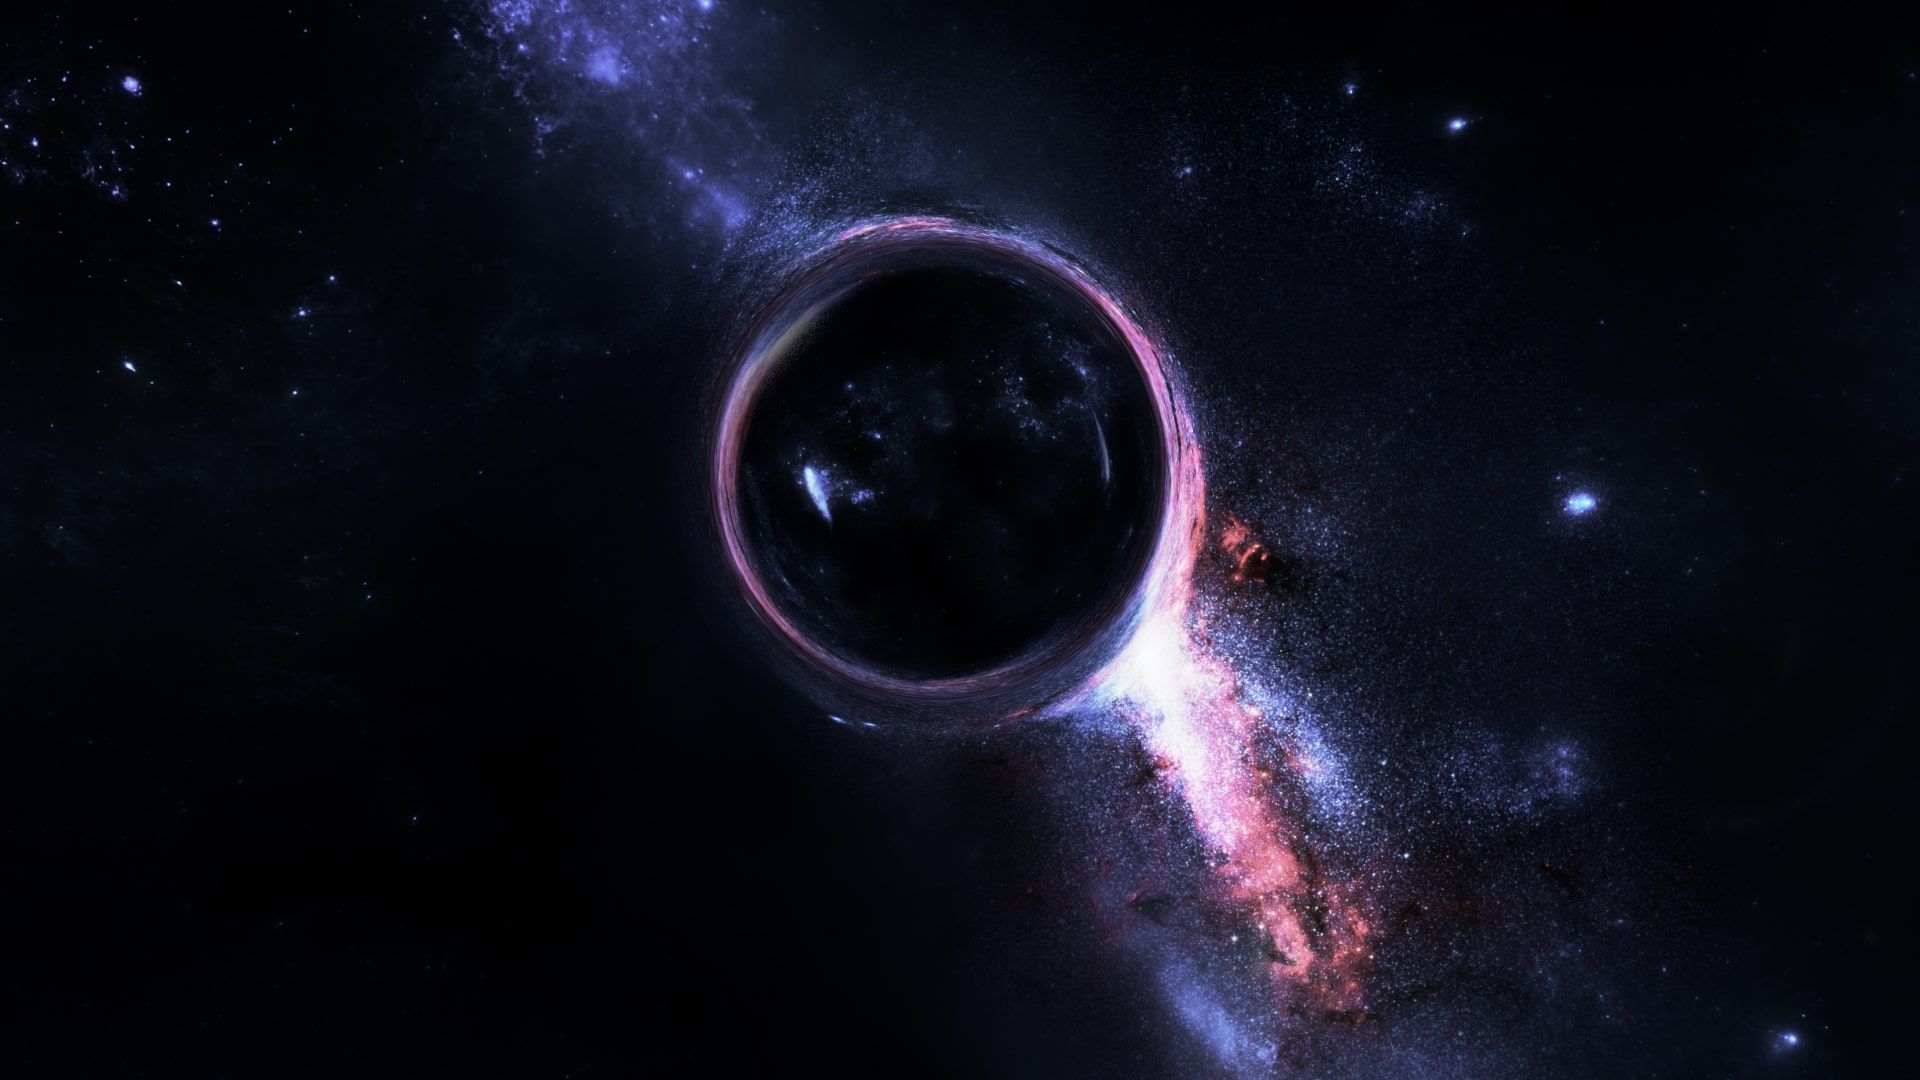 Hình nền hố đen: Khám phá vũ trụ với những hình nền huyền bí của hố đen. Tận hưởng sự đẹp diệu kỳ của không gian bao trùm bởi vùng trống đen tối. Tải ngay hình nền hố đen và choáng ngợp cảm giác thêm một chút bí ẩn vào chiếc điện thoại của bạn.